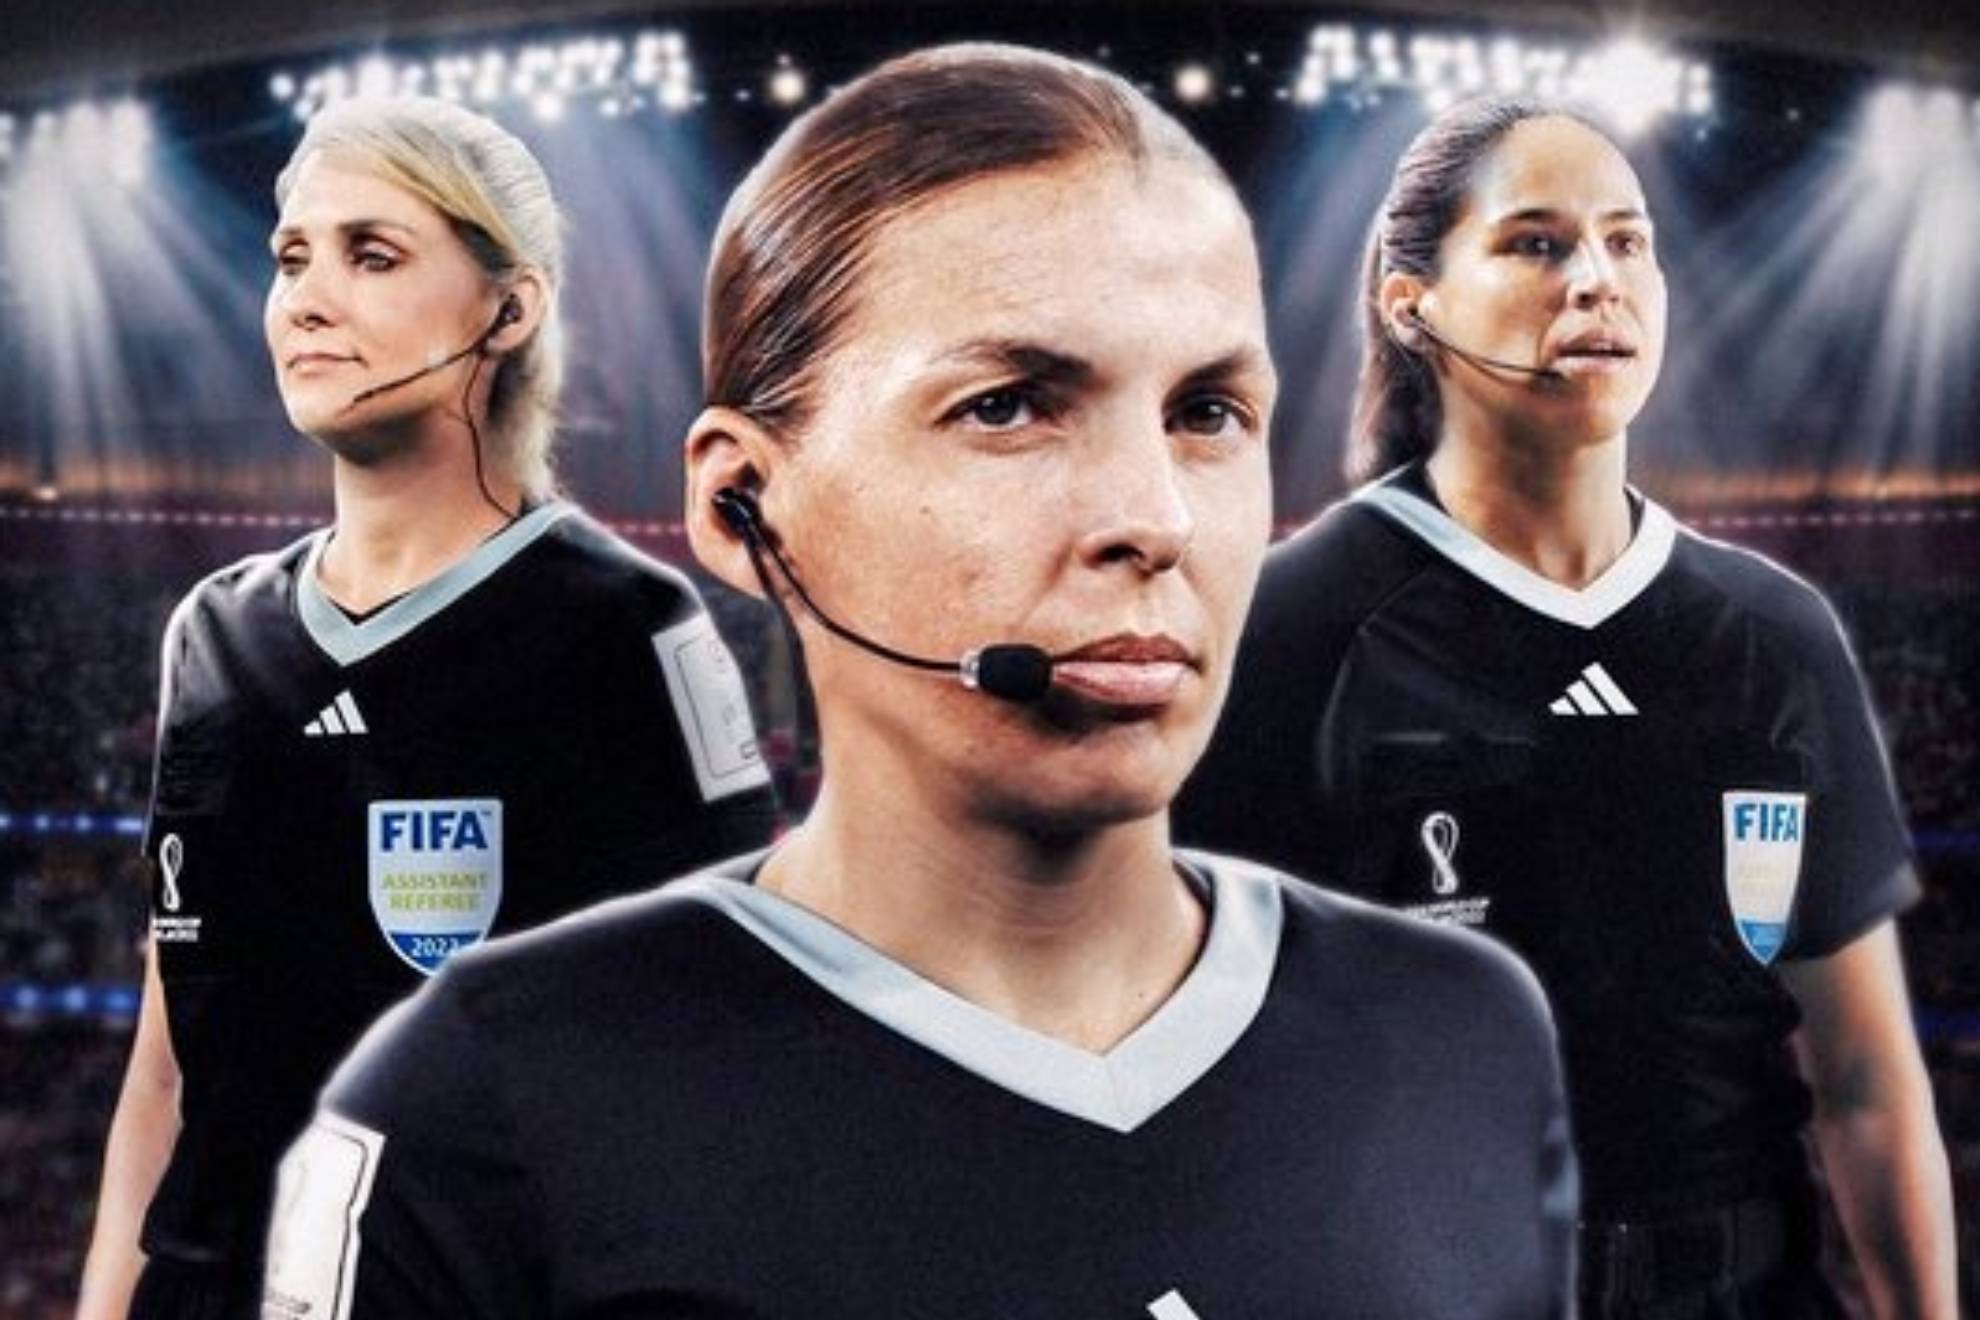 Historia de los Mundiales: un equipo femenino arbitral al completo liderado por Frappart en el Costa Rica-Alemania